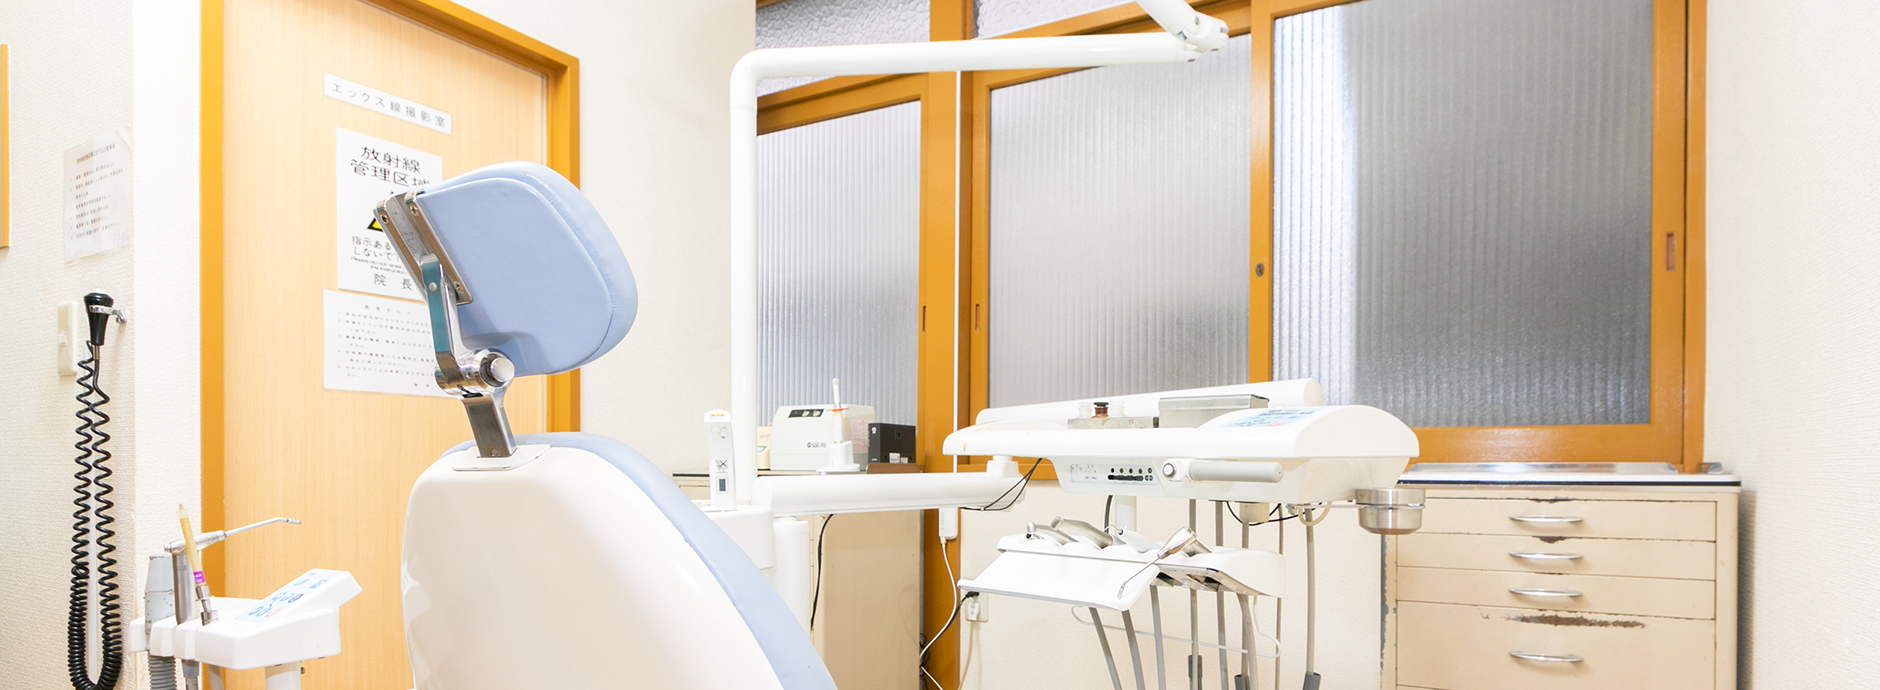 地域の皆様と共に歩む歯科医院 代々歯科医師の家系である荒木歯科医院は、墨田区向島で確かな経験と知識、そして技術を引継ぎ、地域の皆様のかかりつけ医として診療を行っております。